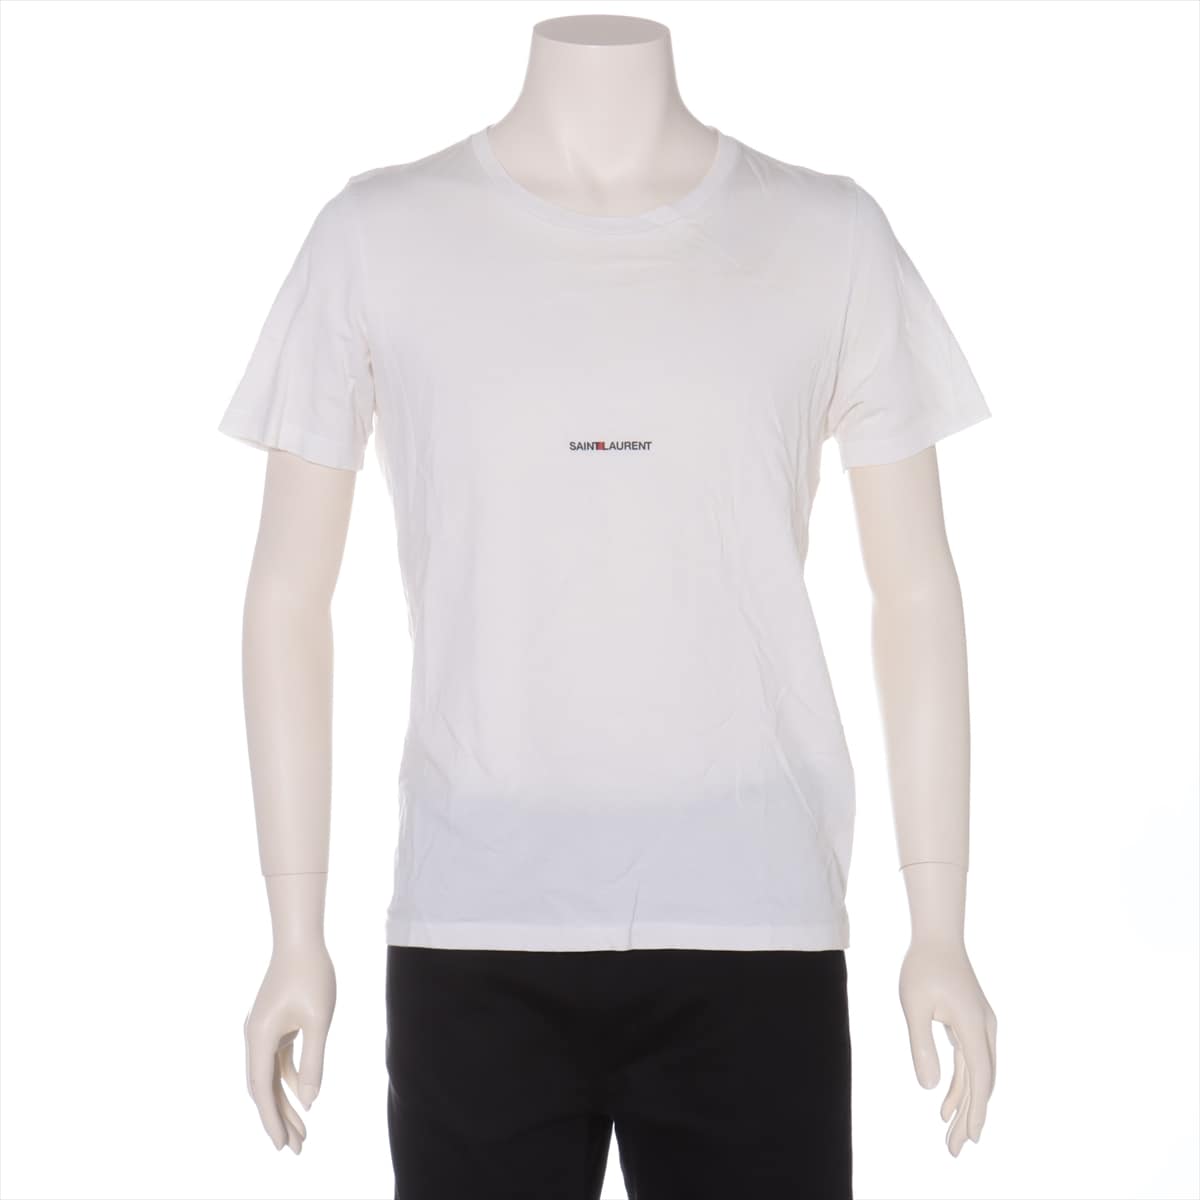 Saint Laurent Paris 17 years Cotton T-shirt S Men's White  Logo